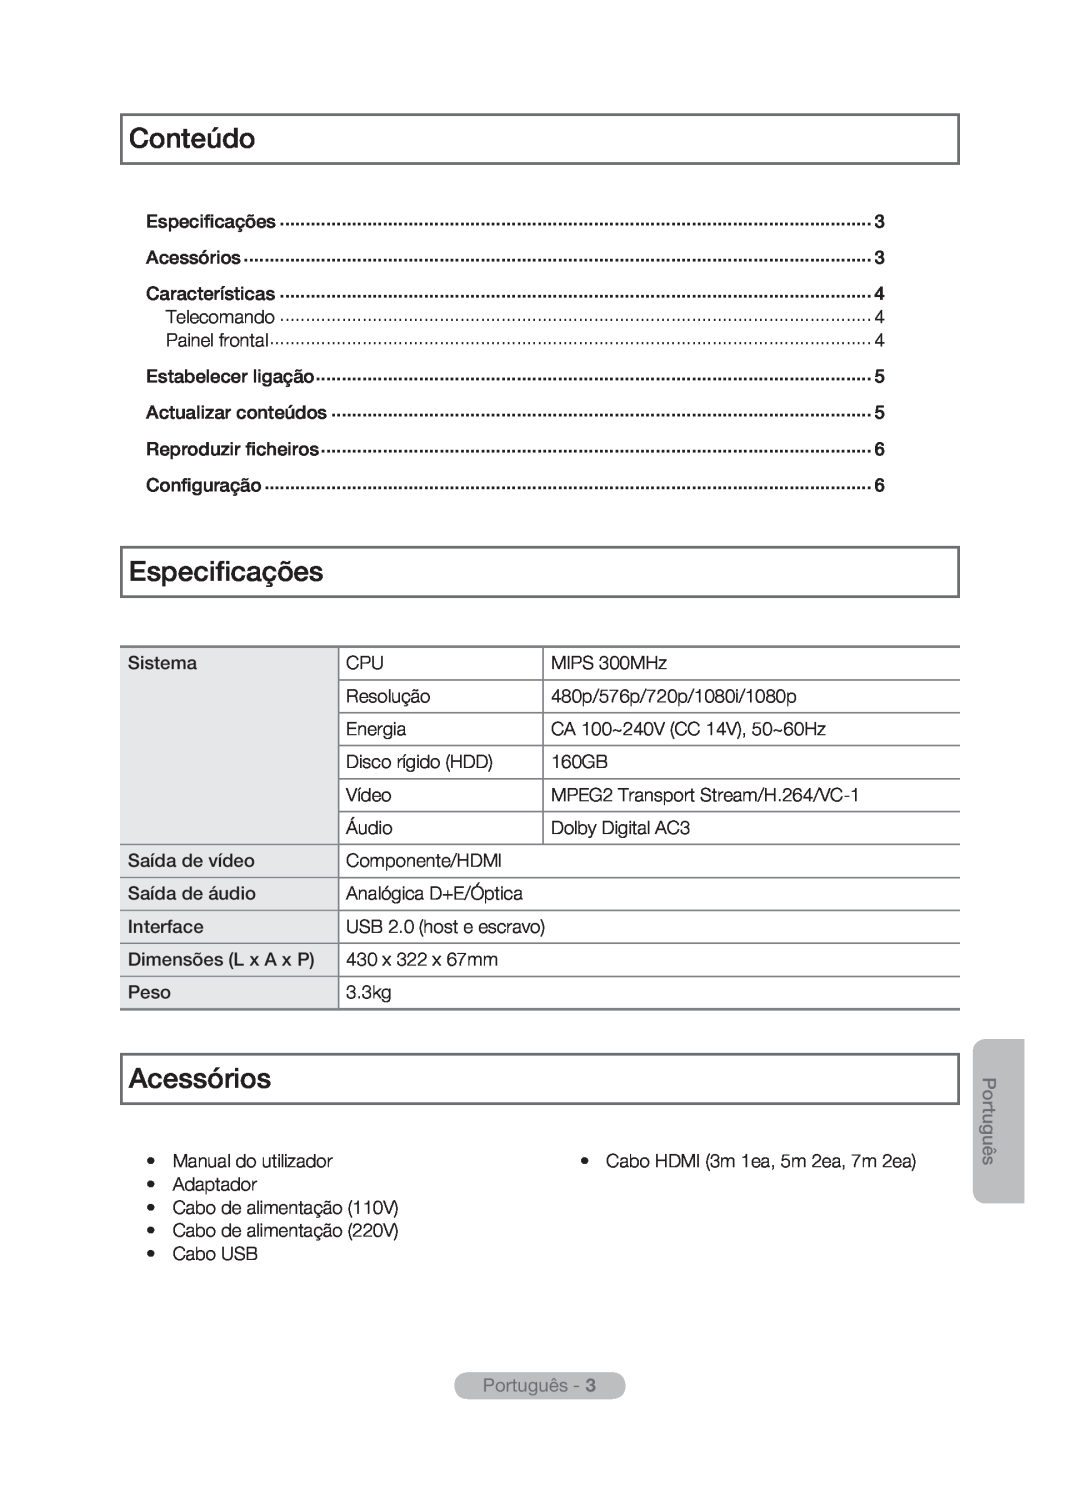 Samsung MR-16SB2 manual Conteúdo, Especificações, Acessórios, Português -  